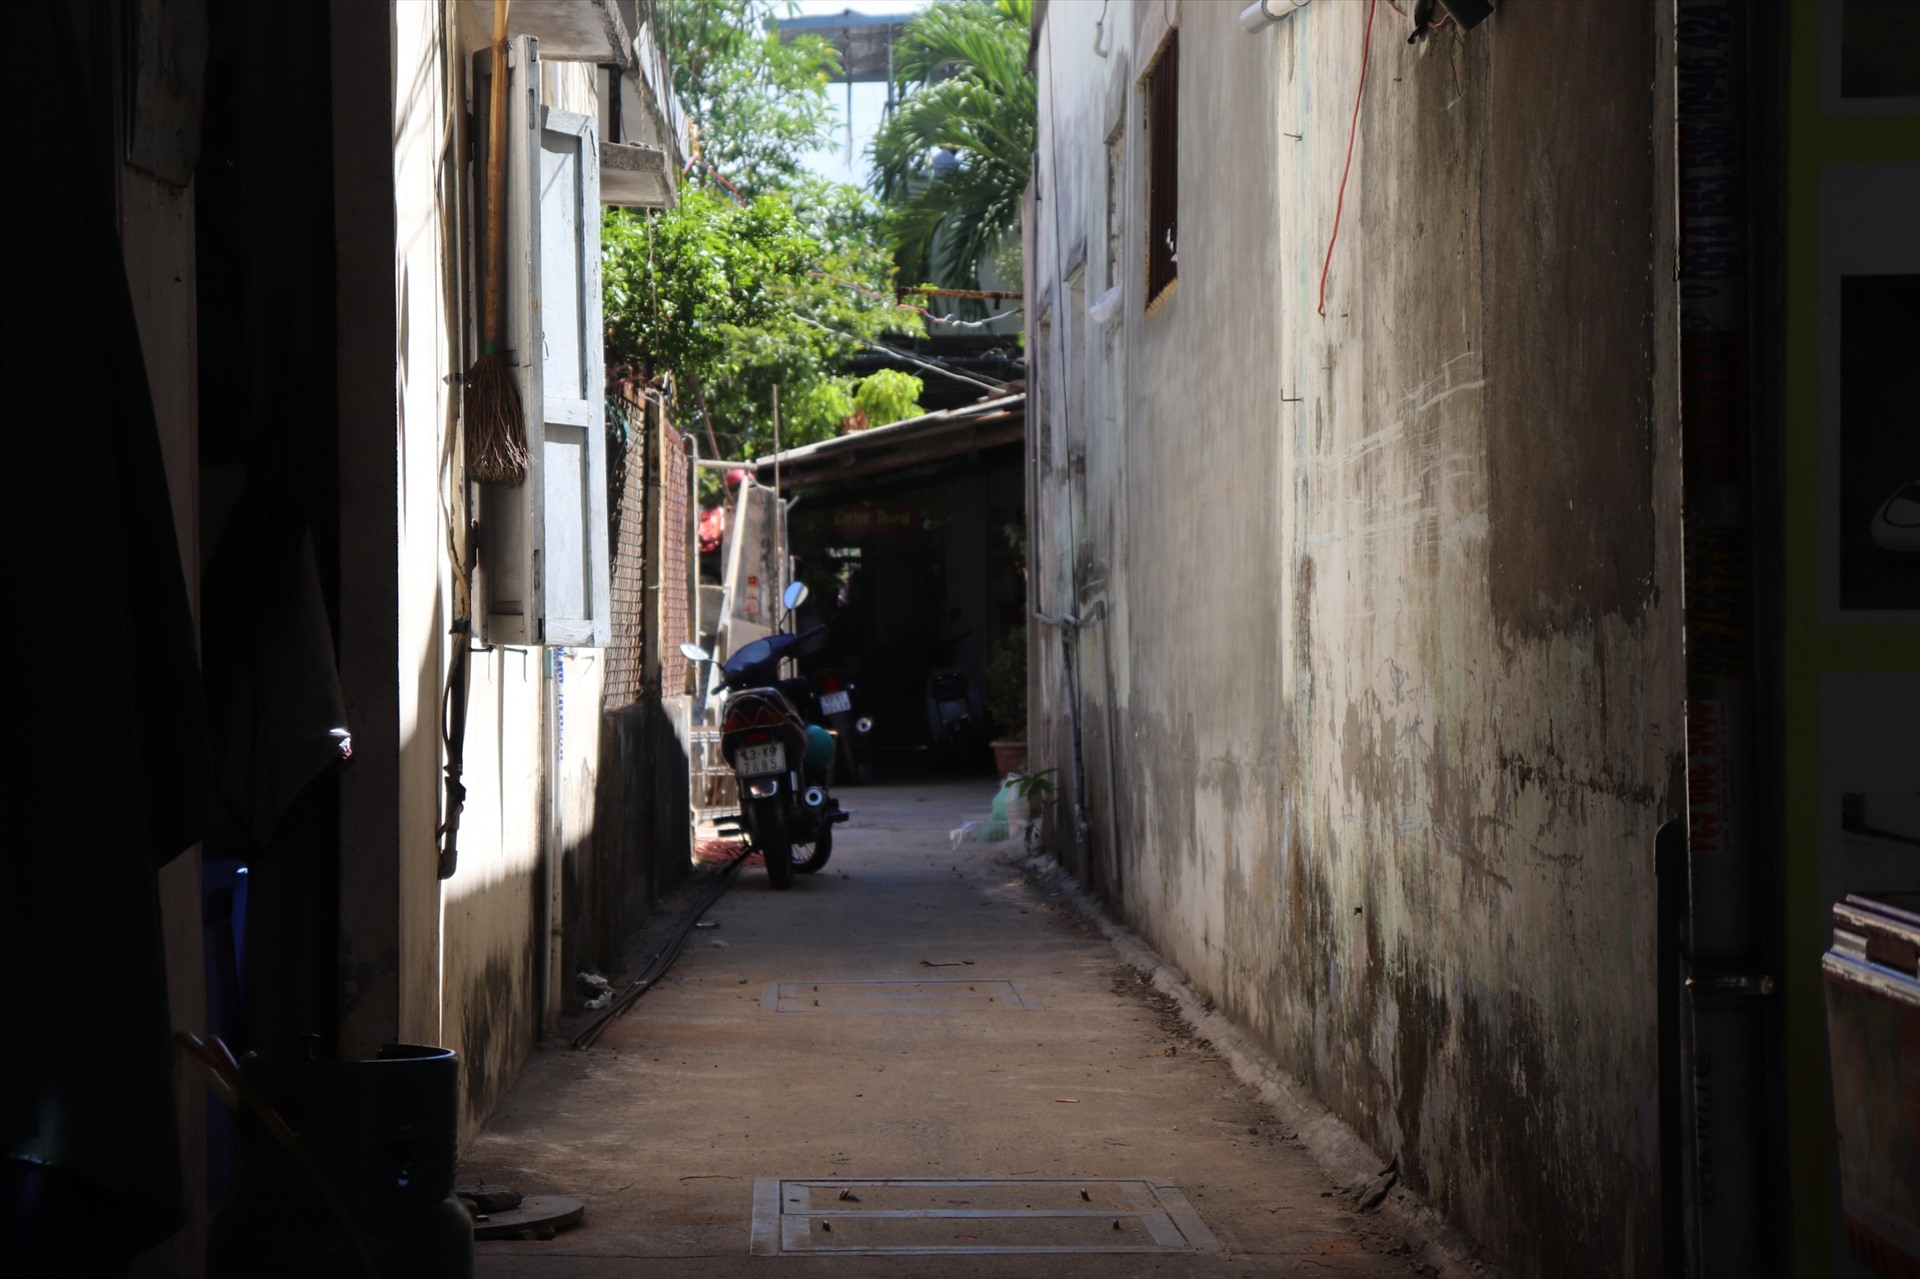 Kiệt 213 đường Nguyễn Công Trứ, TP Đà Nẵng chỉ còn 4 hộ dân bám trụ trong dự án treo. Ảnh: Nguyễn Linh